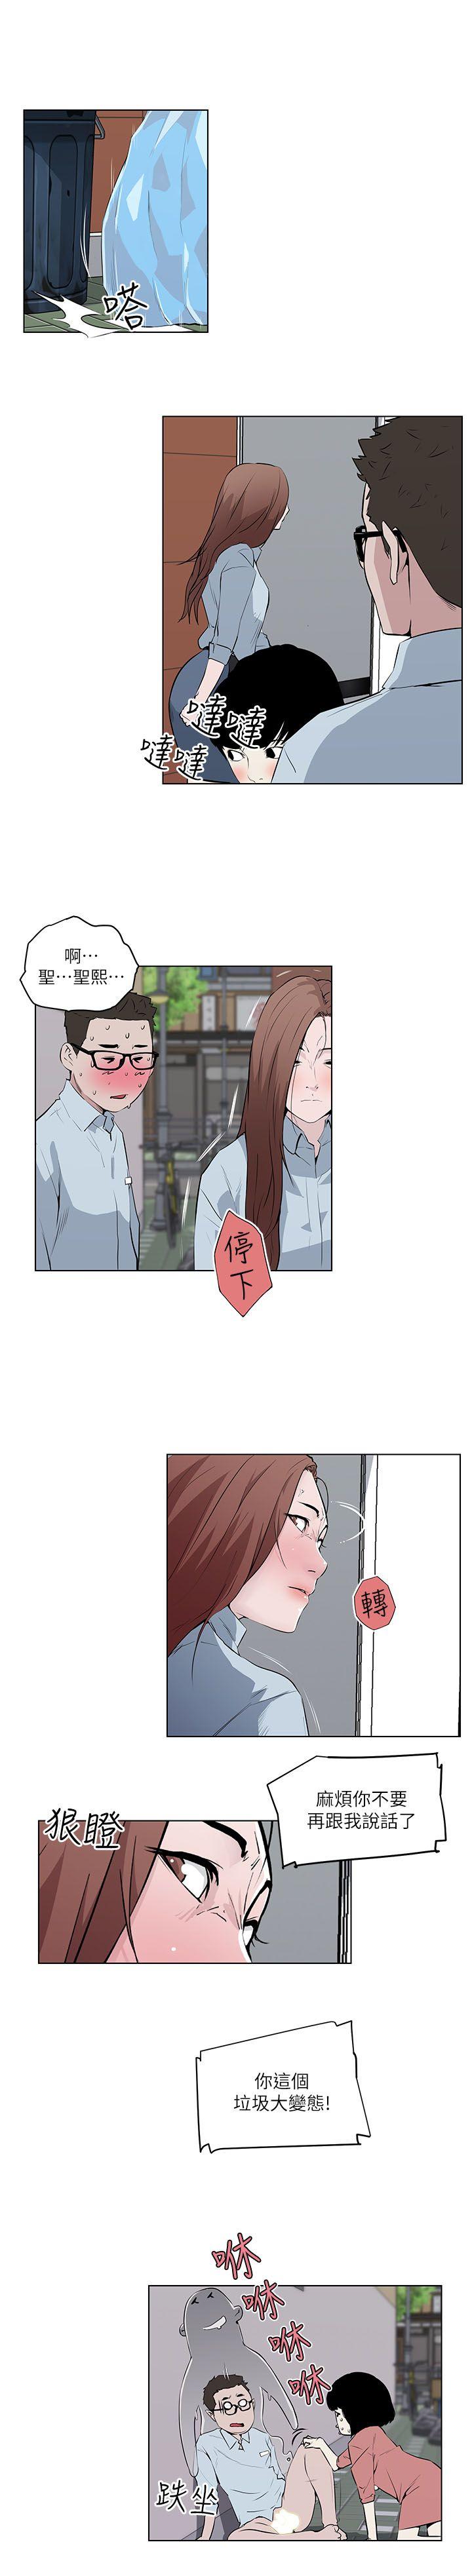 韩国污漫画 打開她的苞 第7话 21